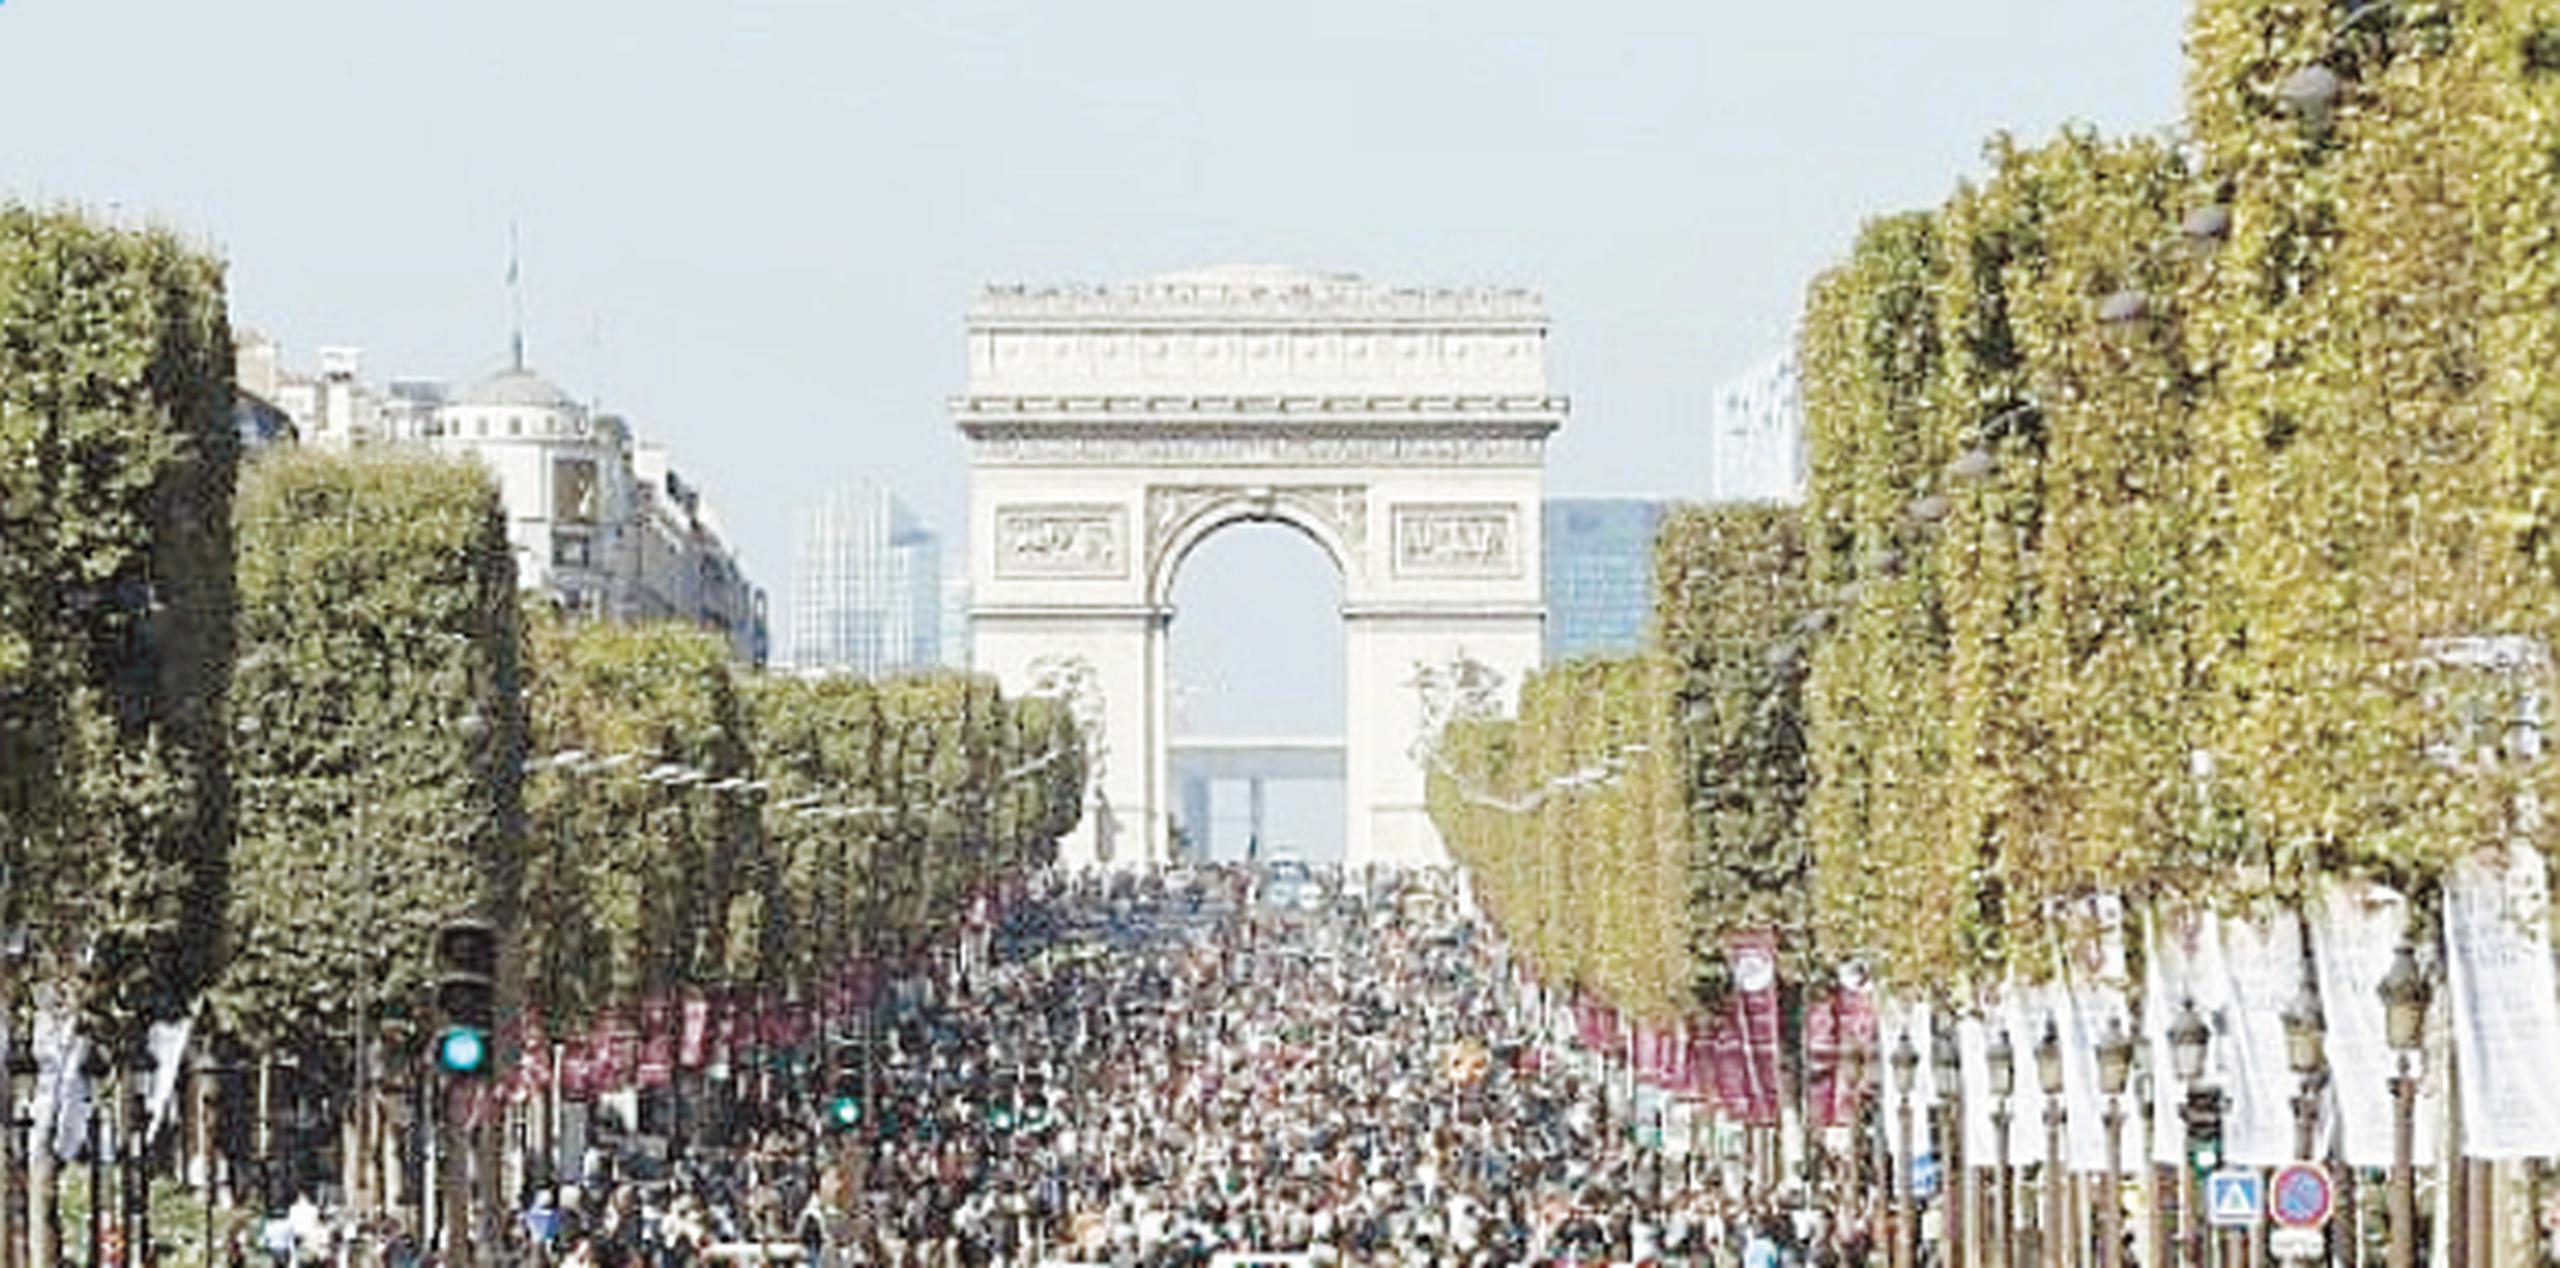 Junto a la Torre Eiffel, el Arco del Triunfo es una de las caras más famosas y hermosas de París. (Archivo)